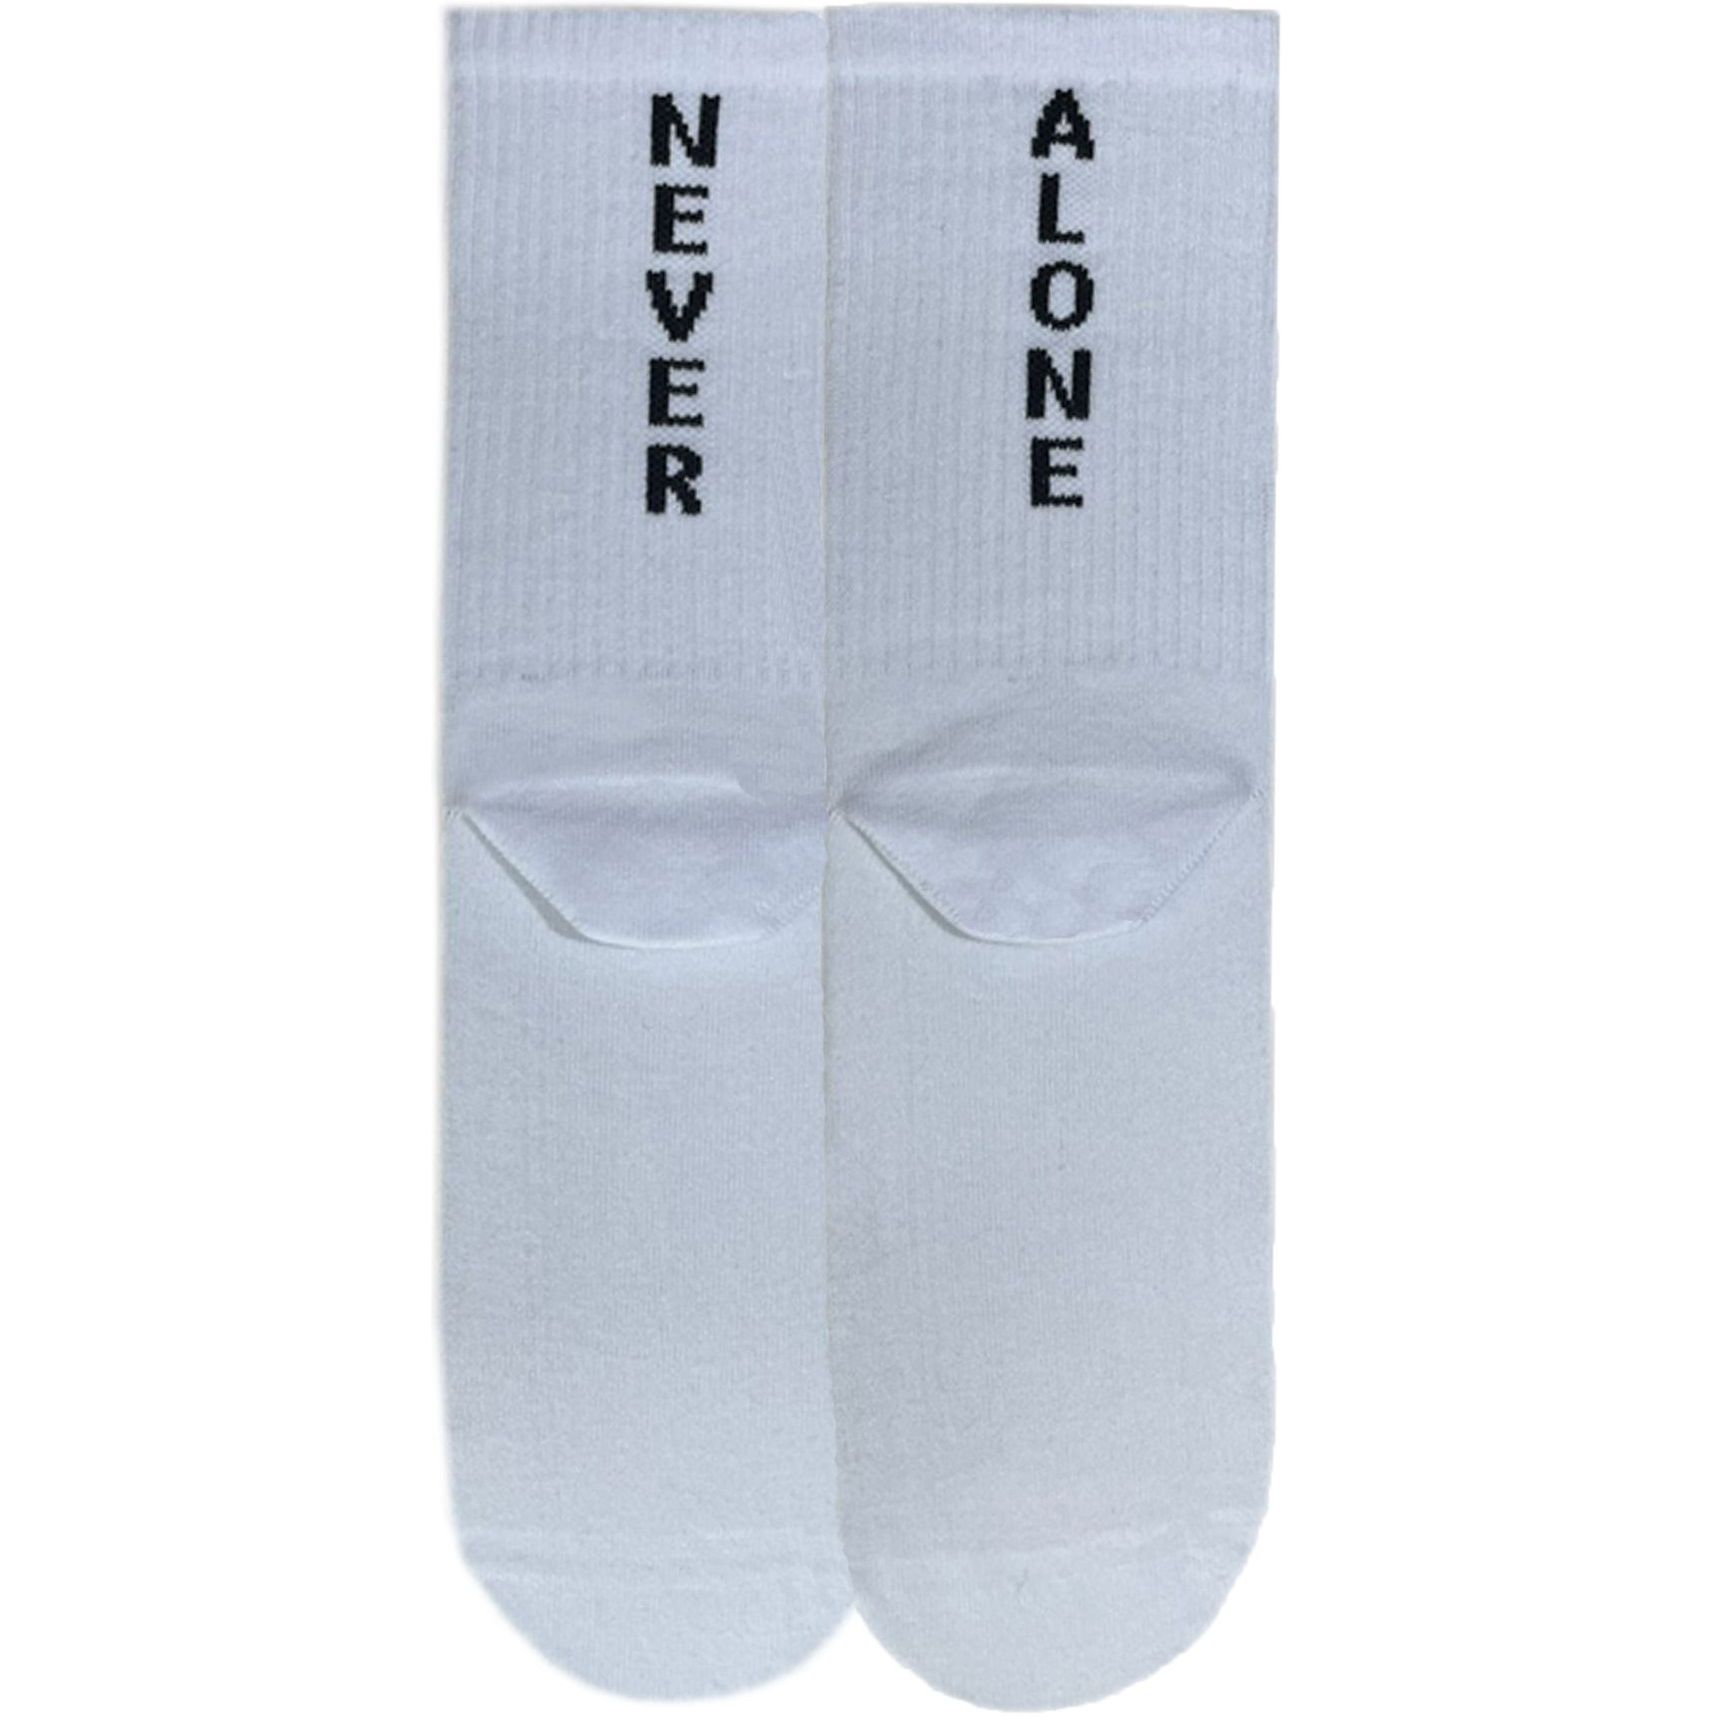 Носки мужские Premier Socks 44-45 1 пара белые с принтом (4820163317939) фото 1